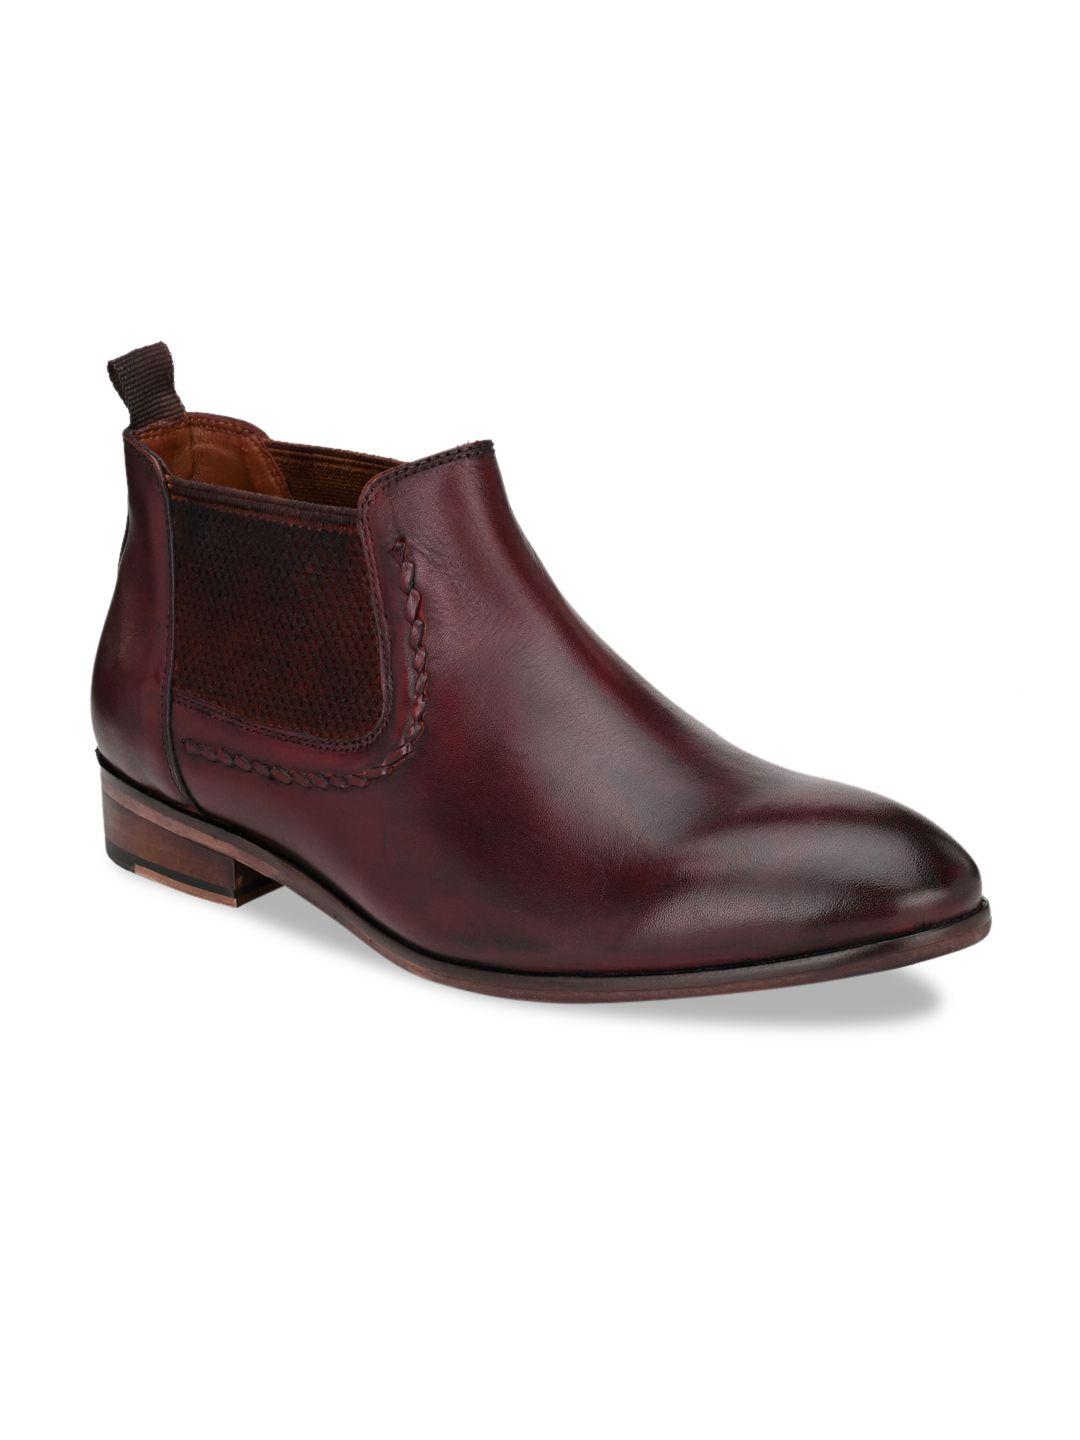 san frissco men burgundy colourblocked leather mid-top flat boots